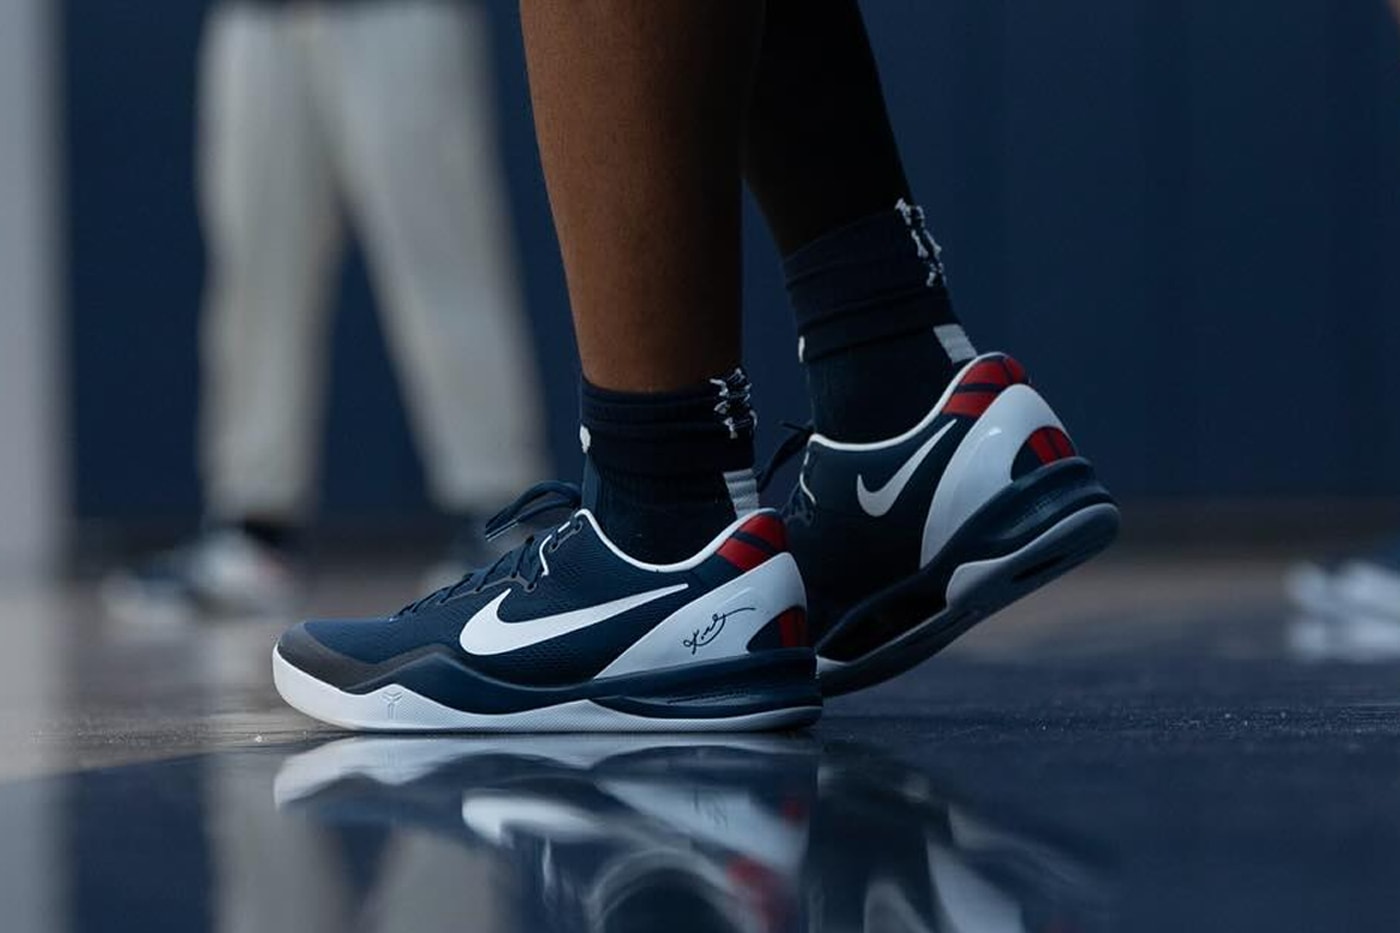 UCONN Basketball Team Receives Nike Kobe 8 Protro PEs ncaa vanessa bryant kobe bryant mamba midnight navy white varsity red husky nike mamba program